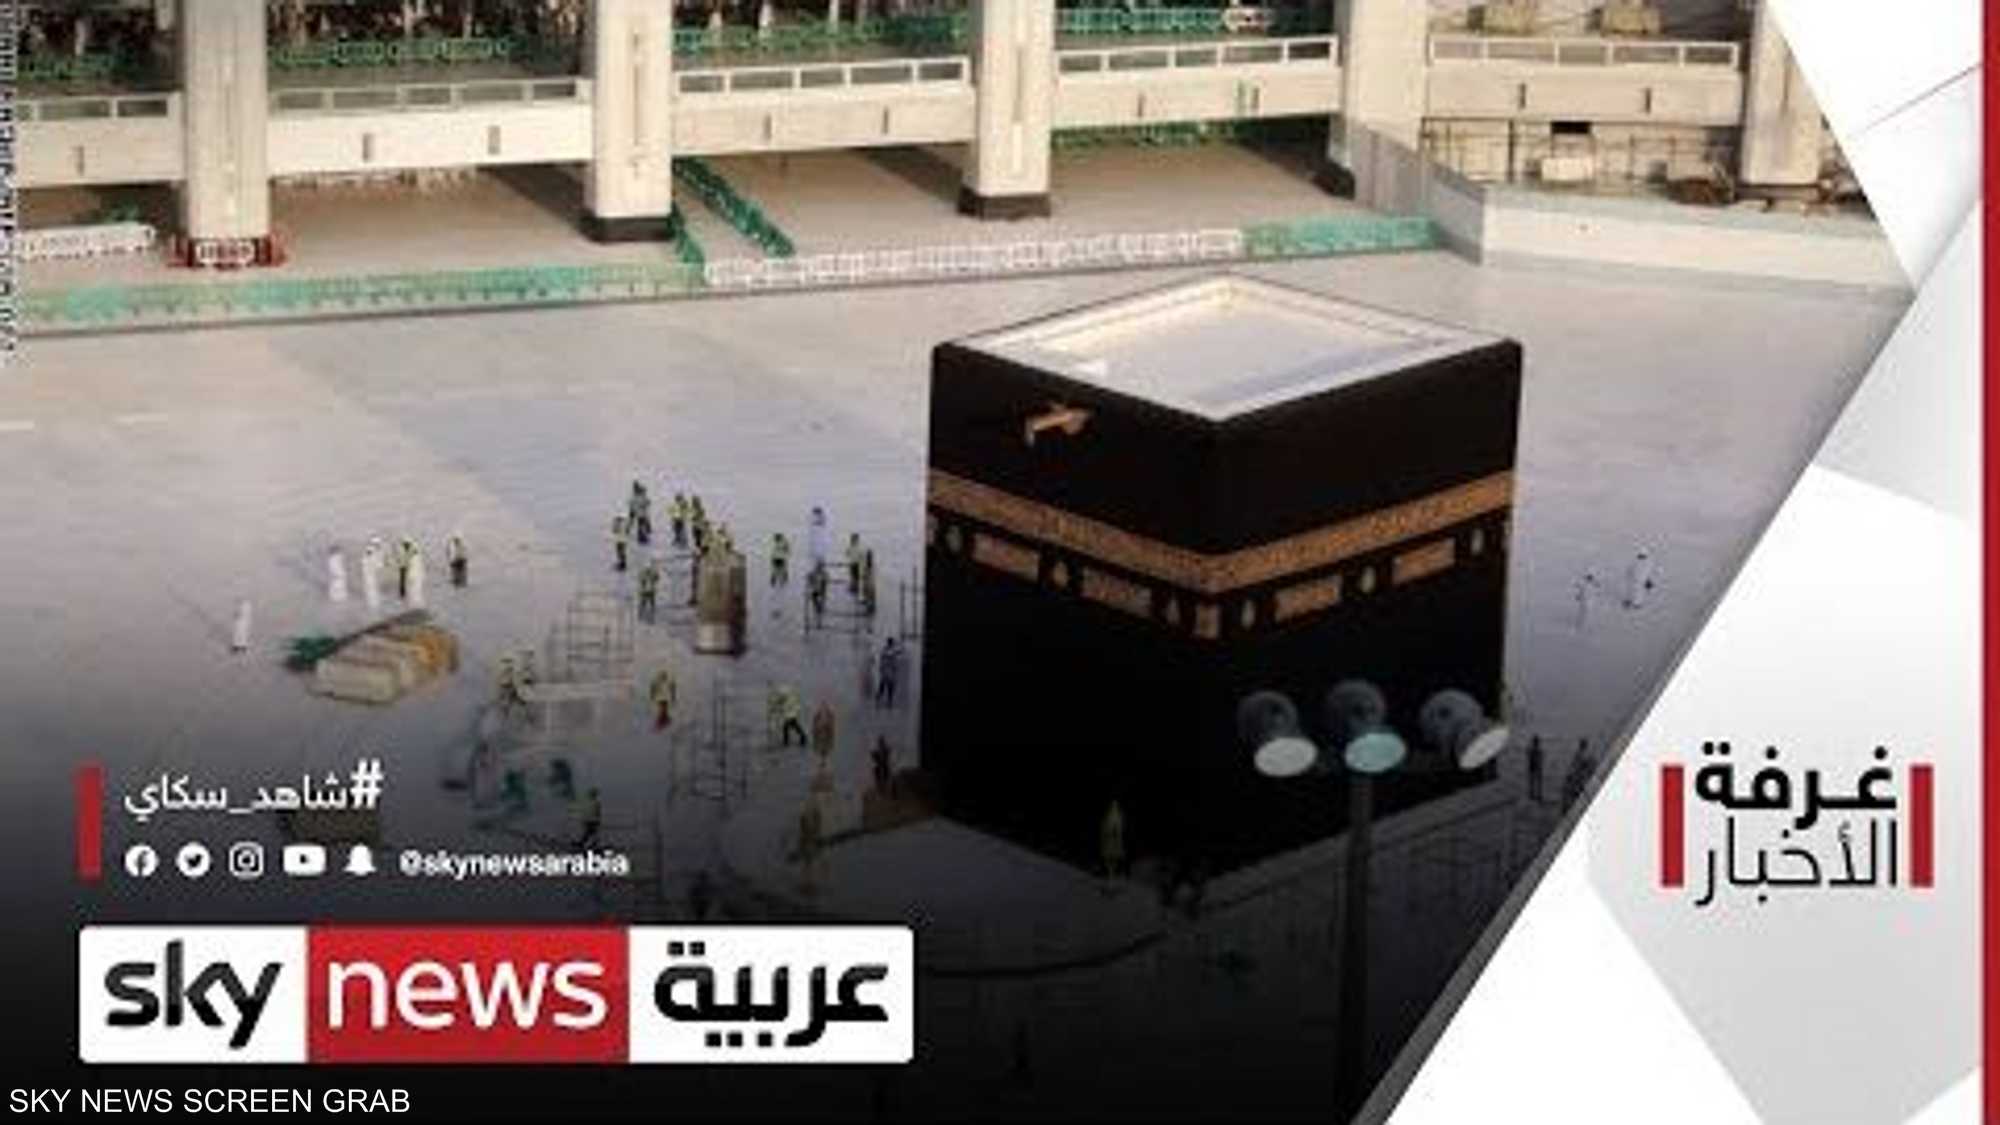 المسجد الحرام يستقبل المصلين للمرة لأولى منذ 7 أشهر